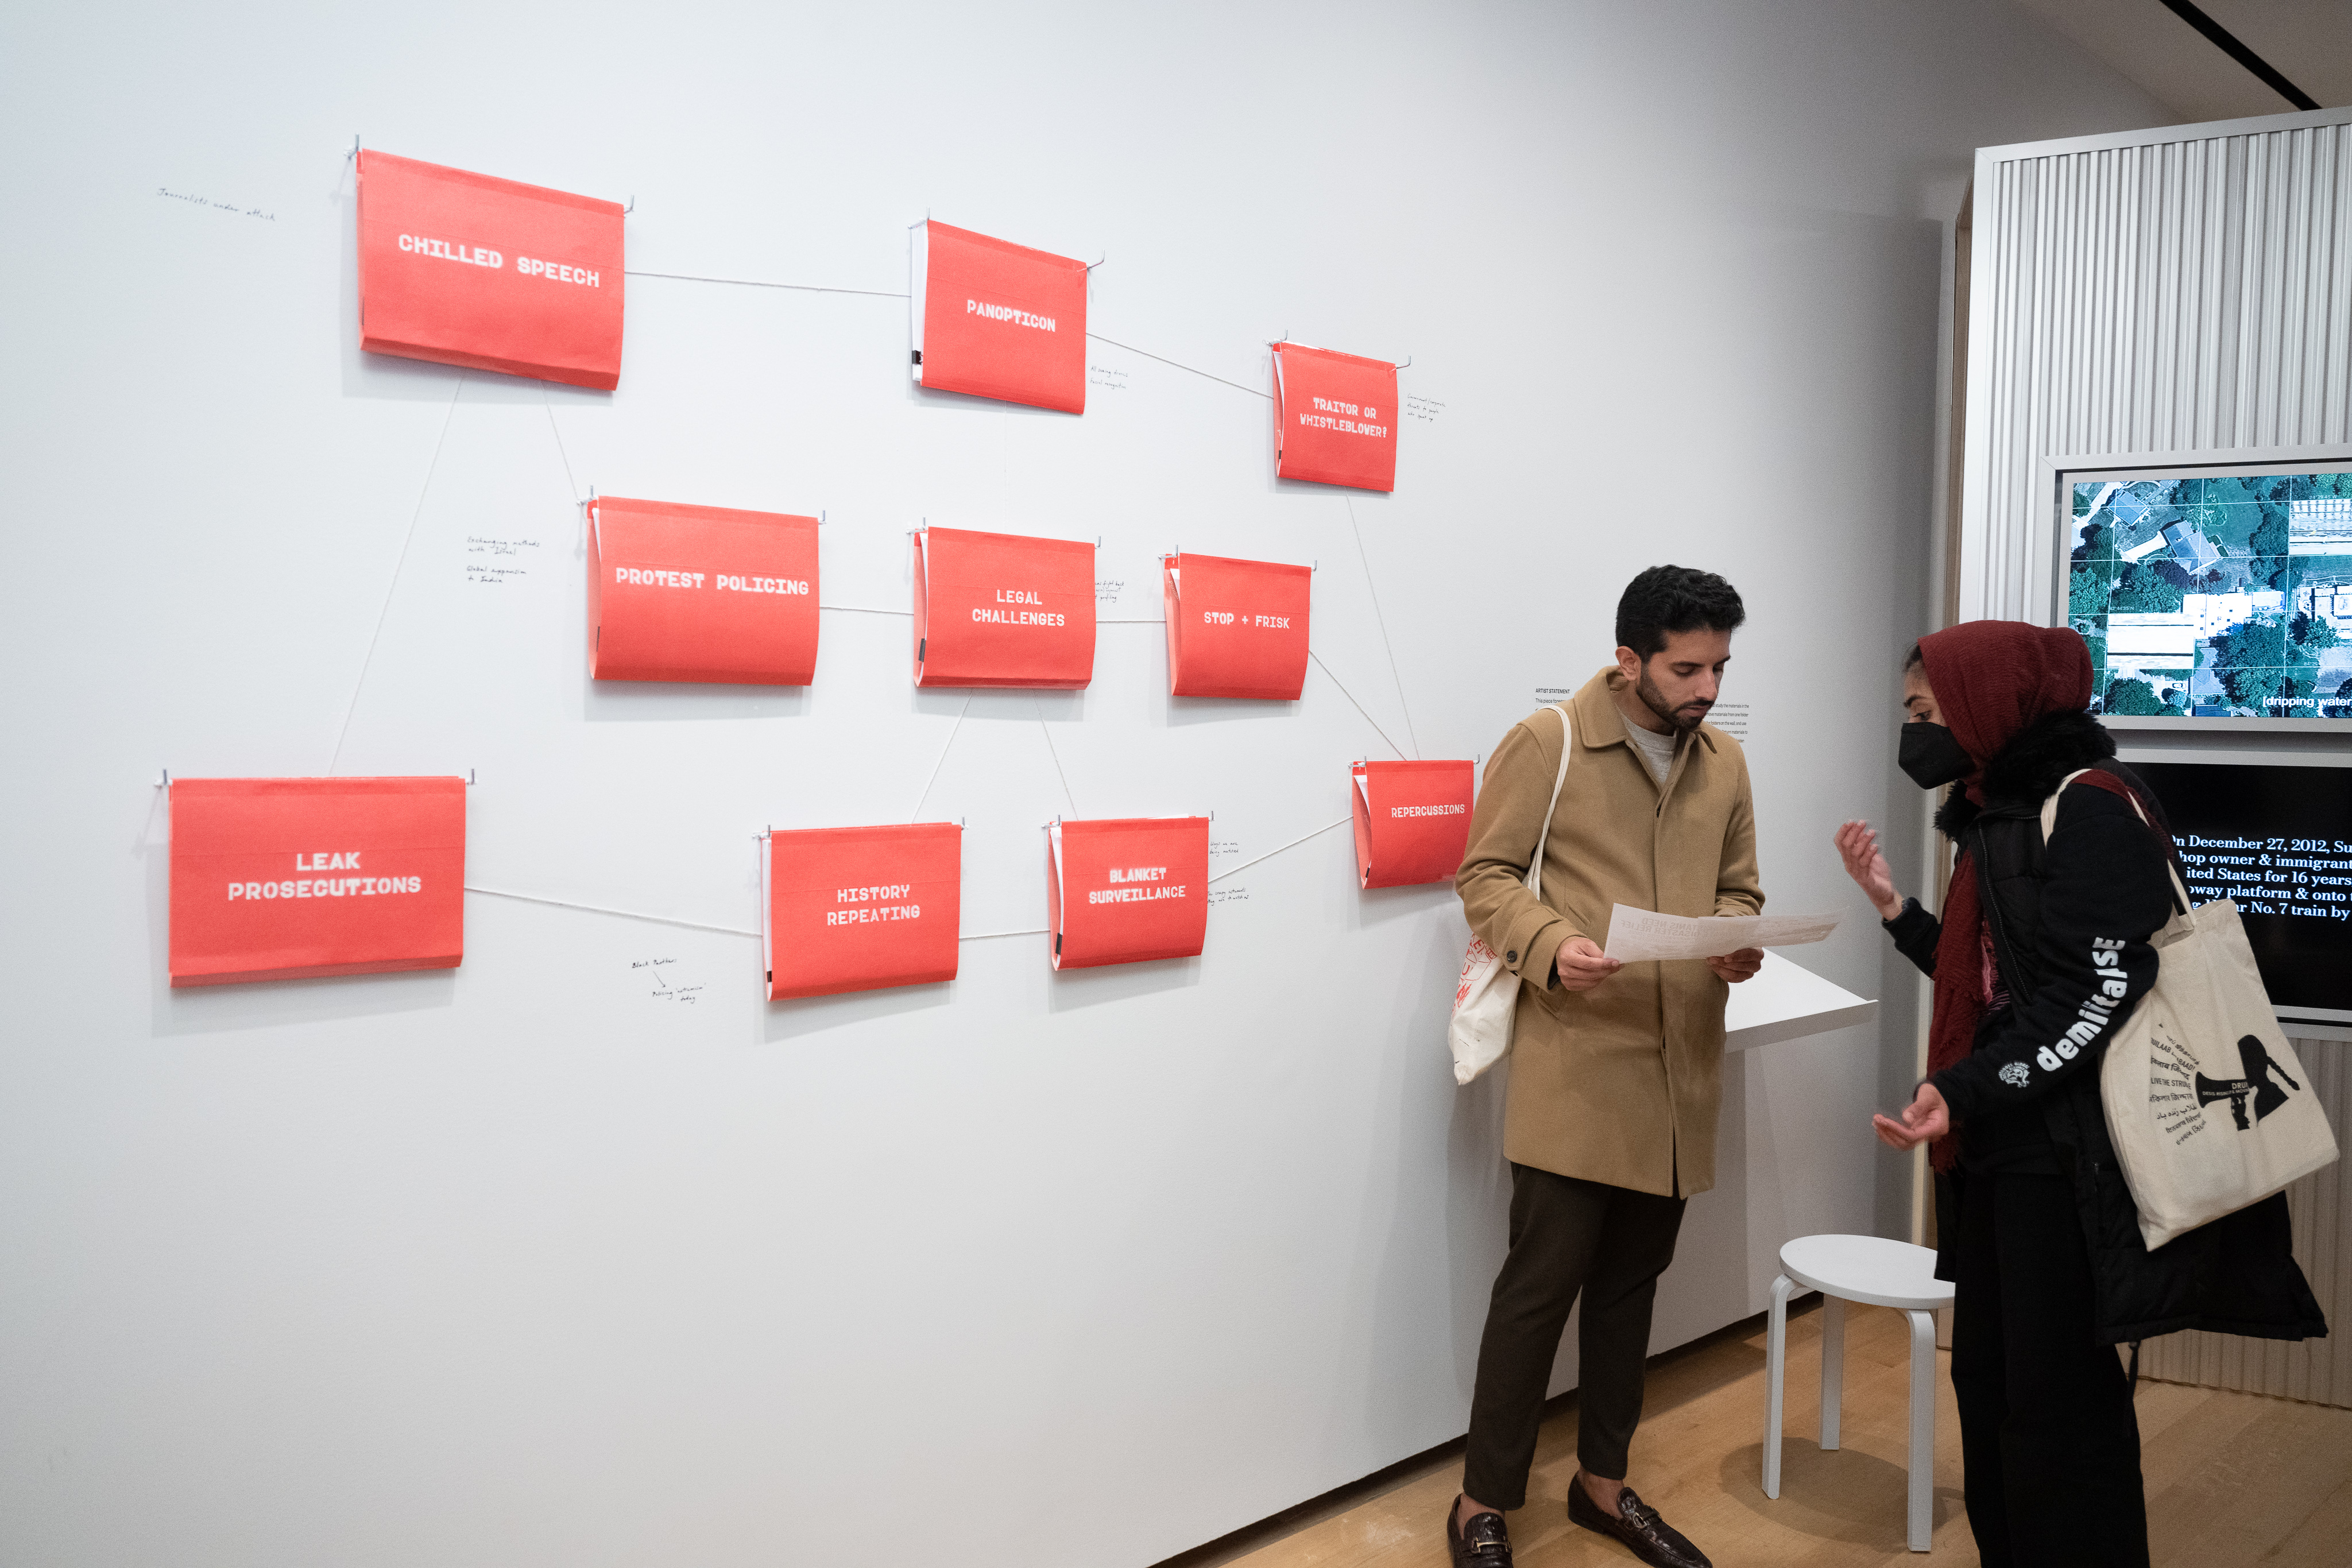 Os visitantes interagem com a instalação “Índice dos Desaparecidos” dos artistas Chitra Ganesh e Mariam Ghani.